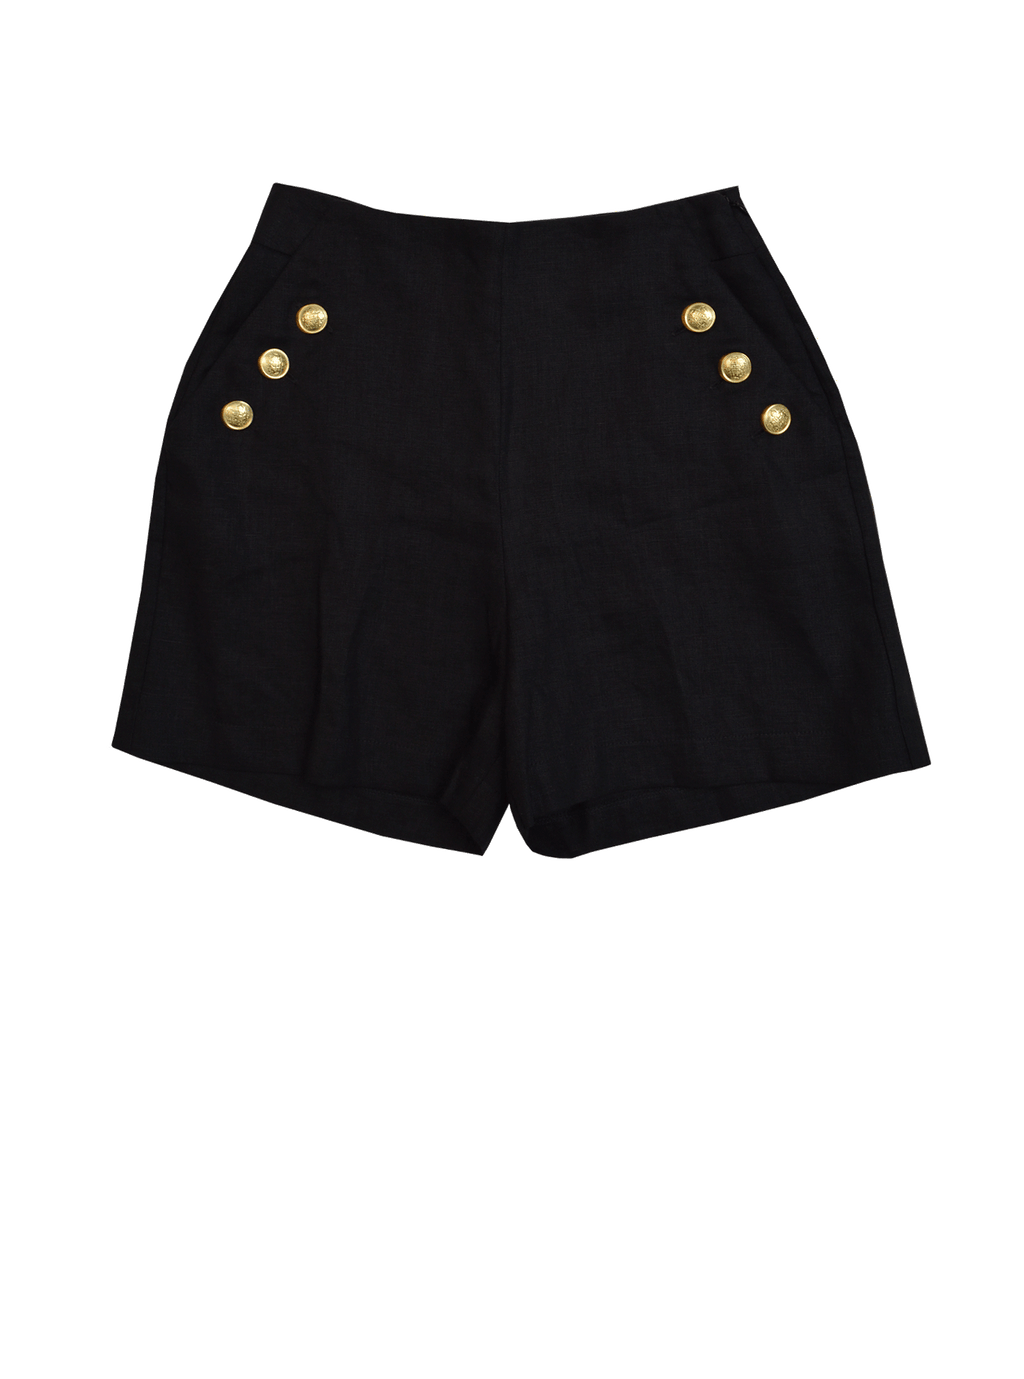 Cerdeña Shorts: S Spazio